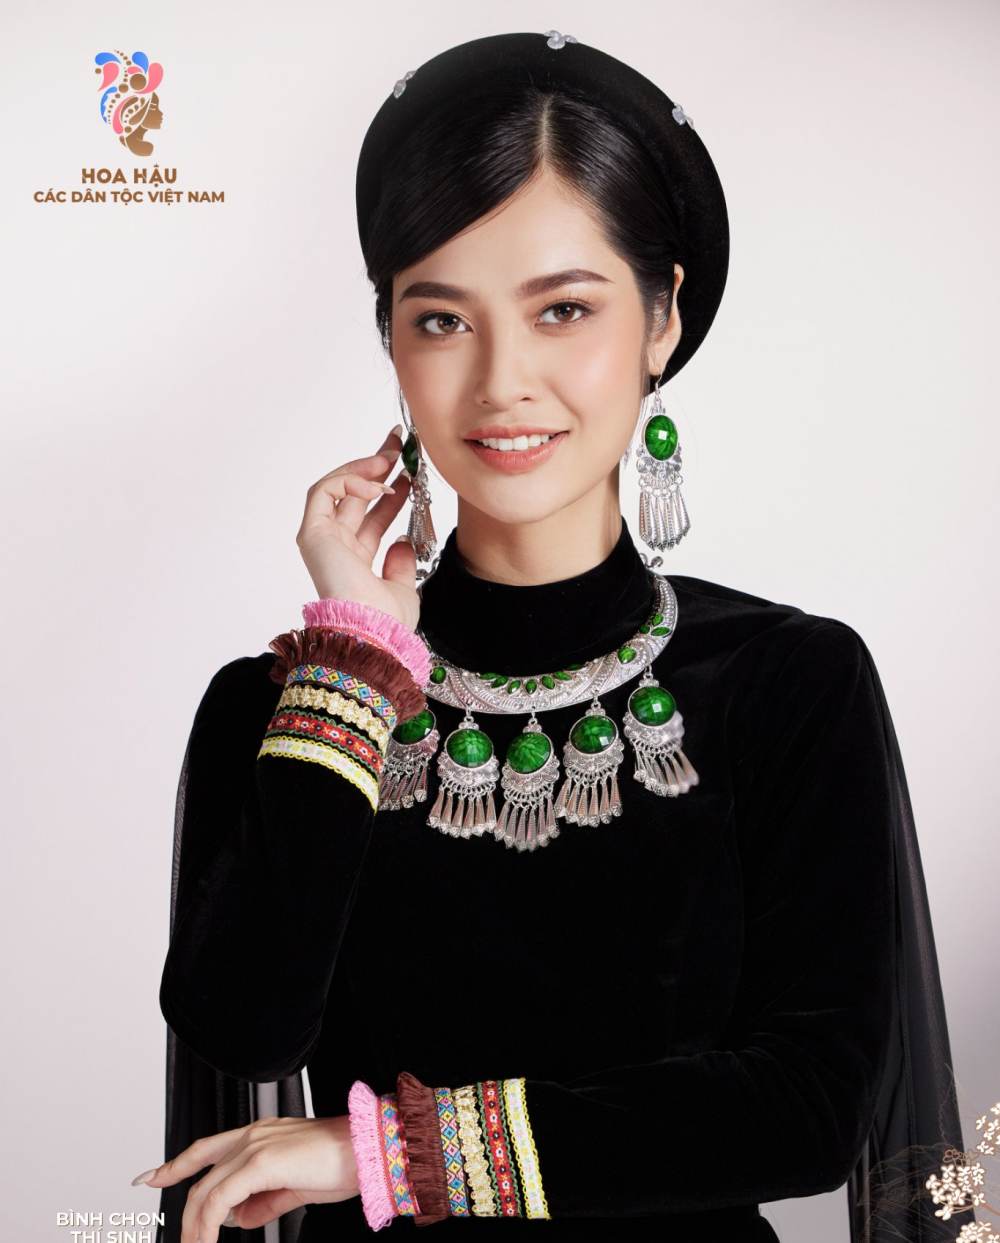 Nữ sinh dân tộc Tày xinh như mộng, được dự đoán là Hoa hậu các dân tộc Việt Nam - 7